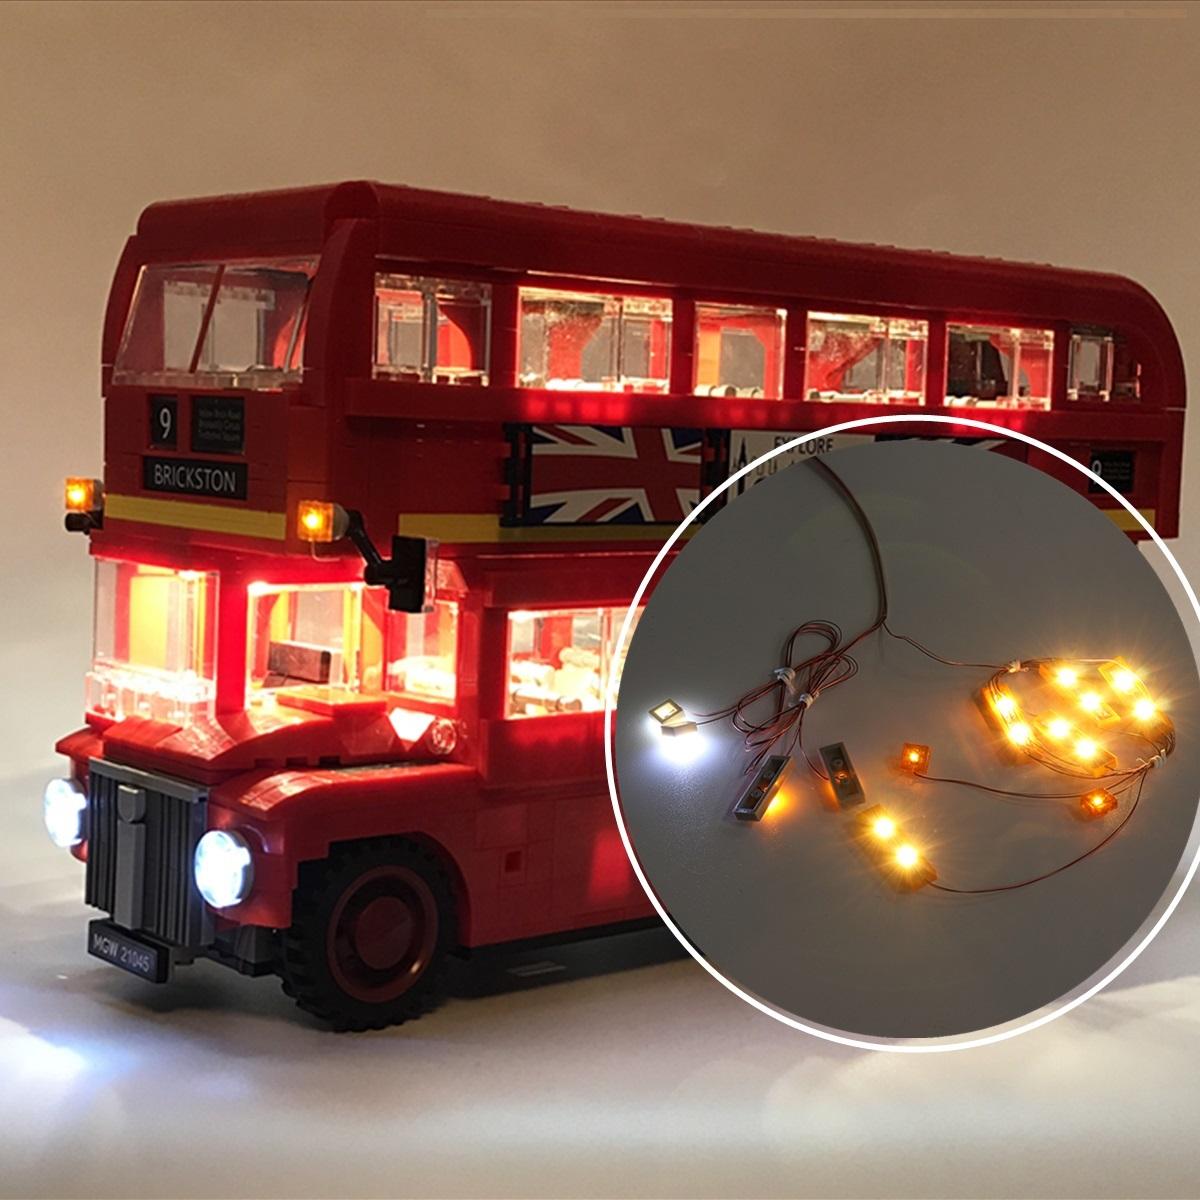 

DIY Светодиодный Освещение Набор ТОЛЬКО ДЛЯ LEGO London Bus 10258 Игрушечные Кирпичи Строительные Блоки